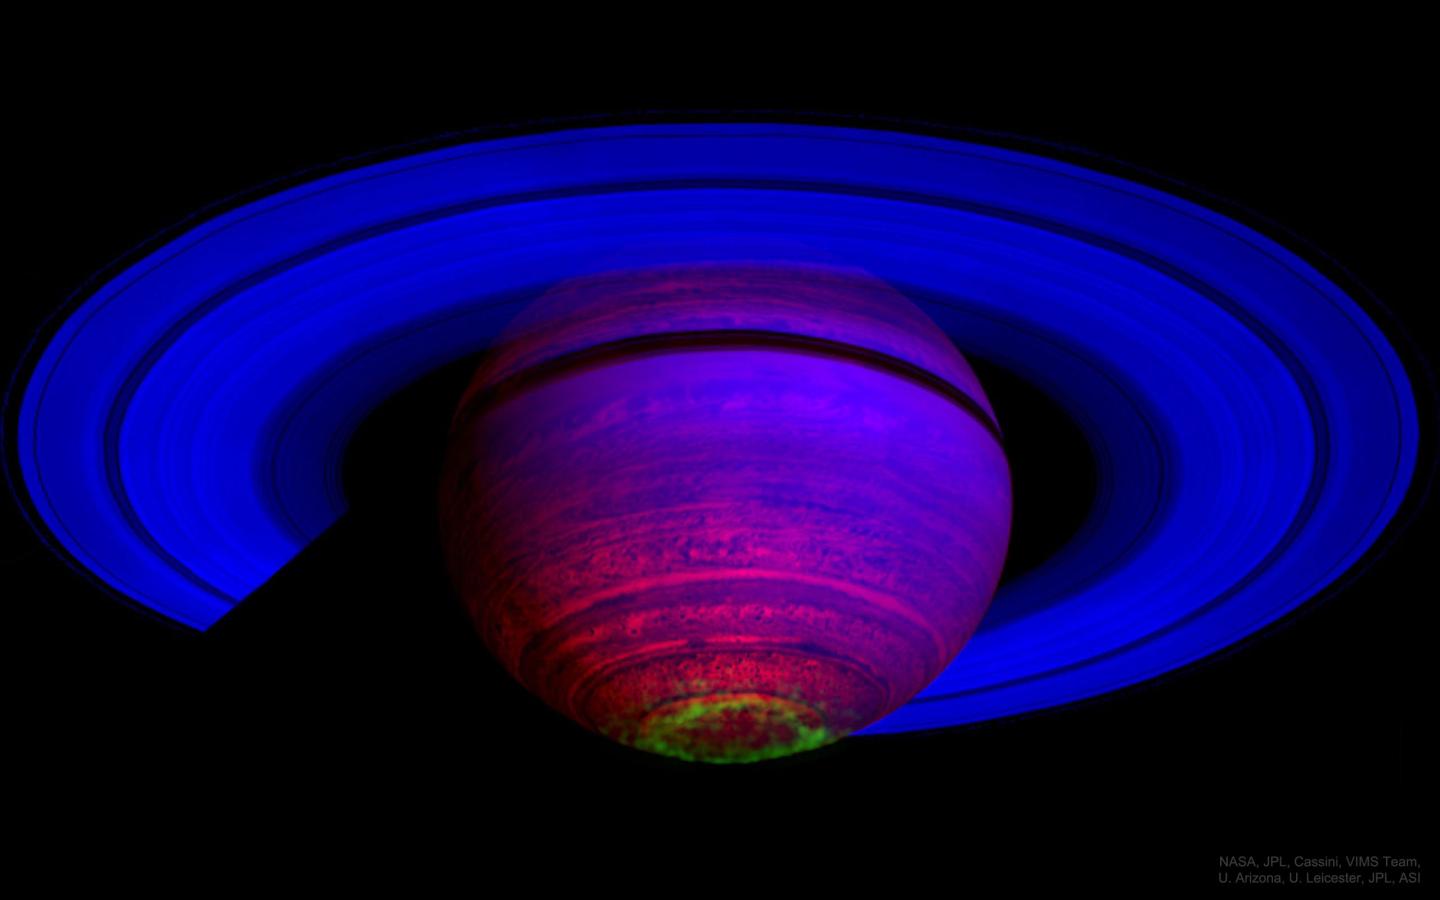 False colour image of Saturn